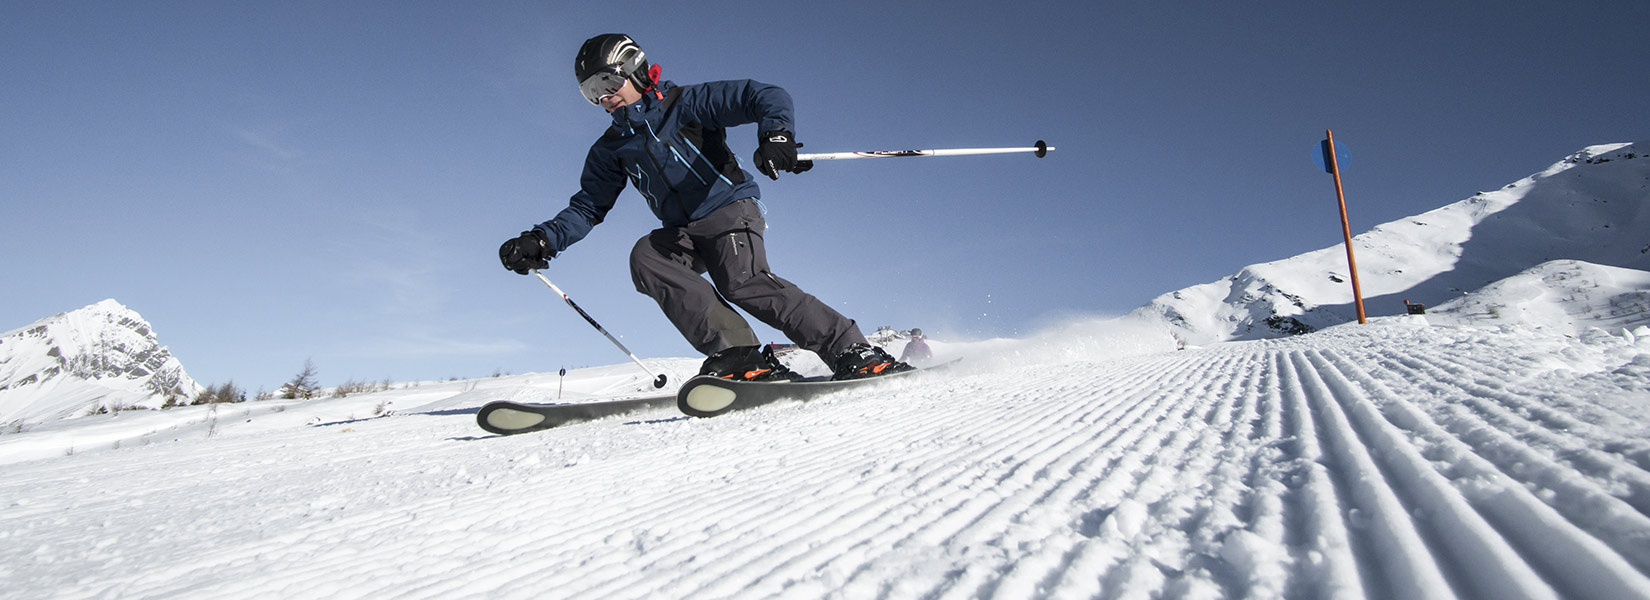 3_Skifahren-Großglockner-Resort-Kals-Matrei_TVB-Osttirol_Berg-im-Bild-OG_Kals-am-Großglockner